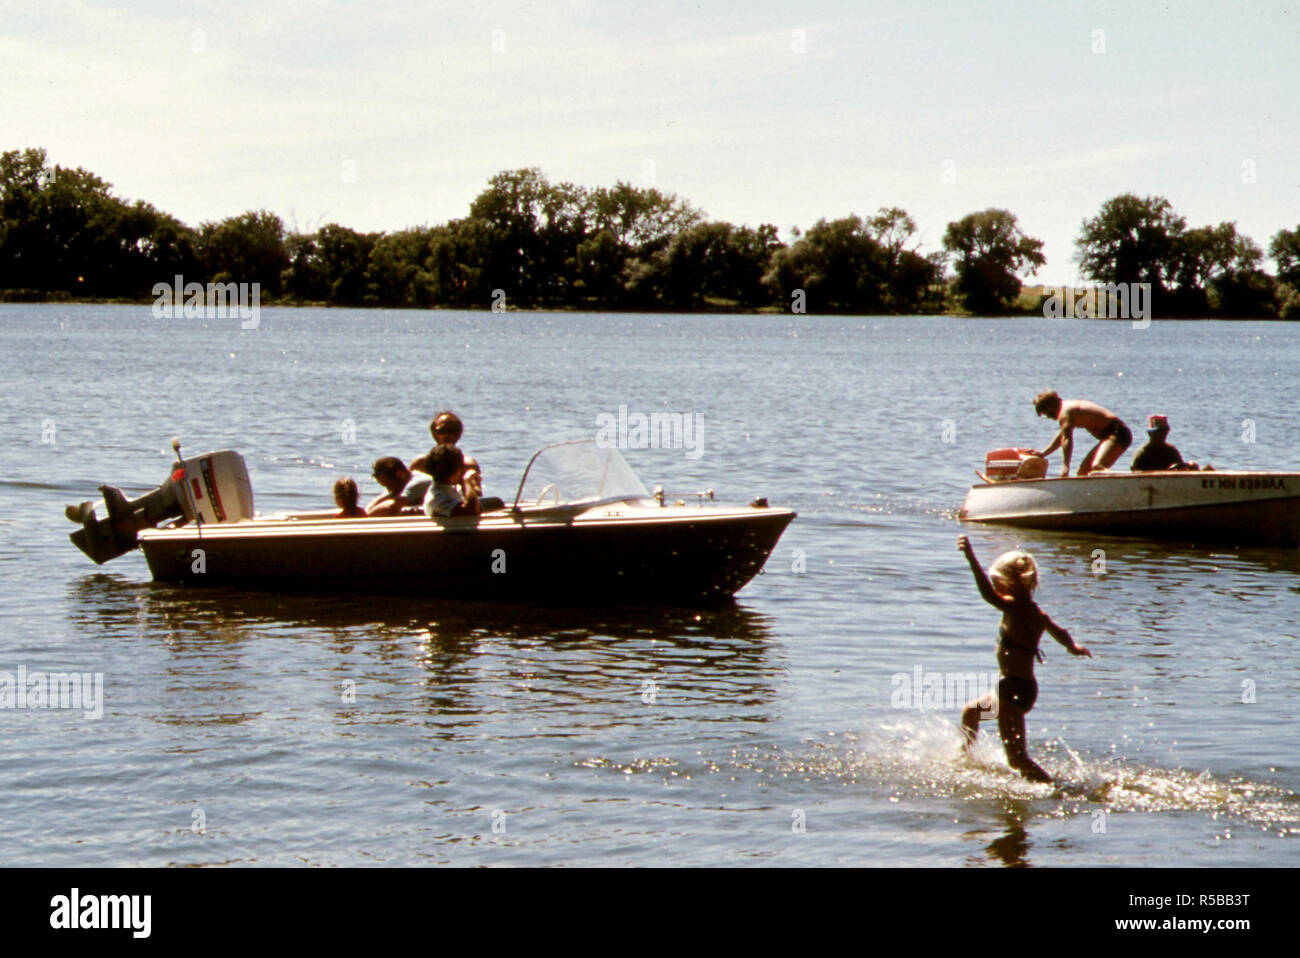 Les jeunes de New Ulm, Minnesota. Passer un dimanche la natation et la navigation de plaisance au lac Clear trois milles à l'ouest de la ville, ca. 1975 Banque D'Images